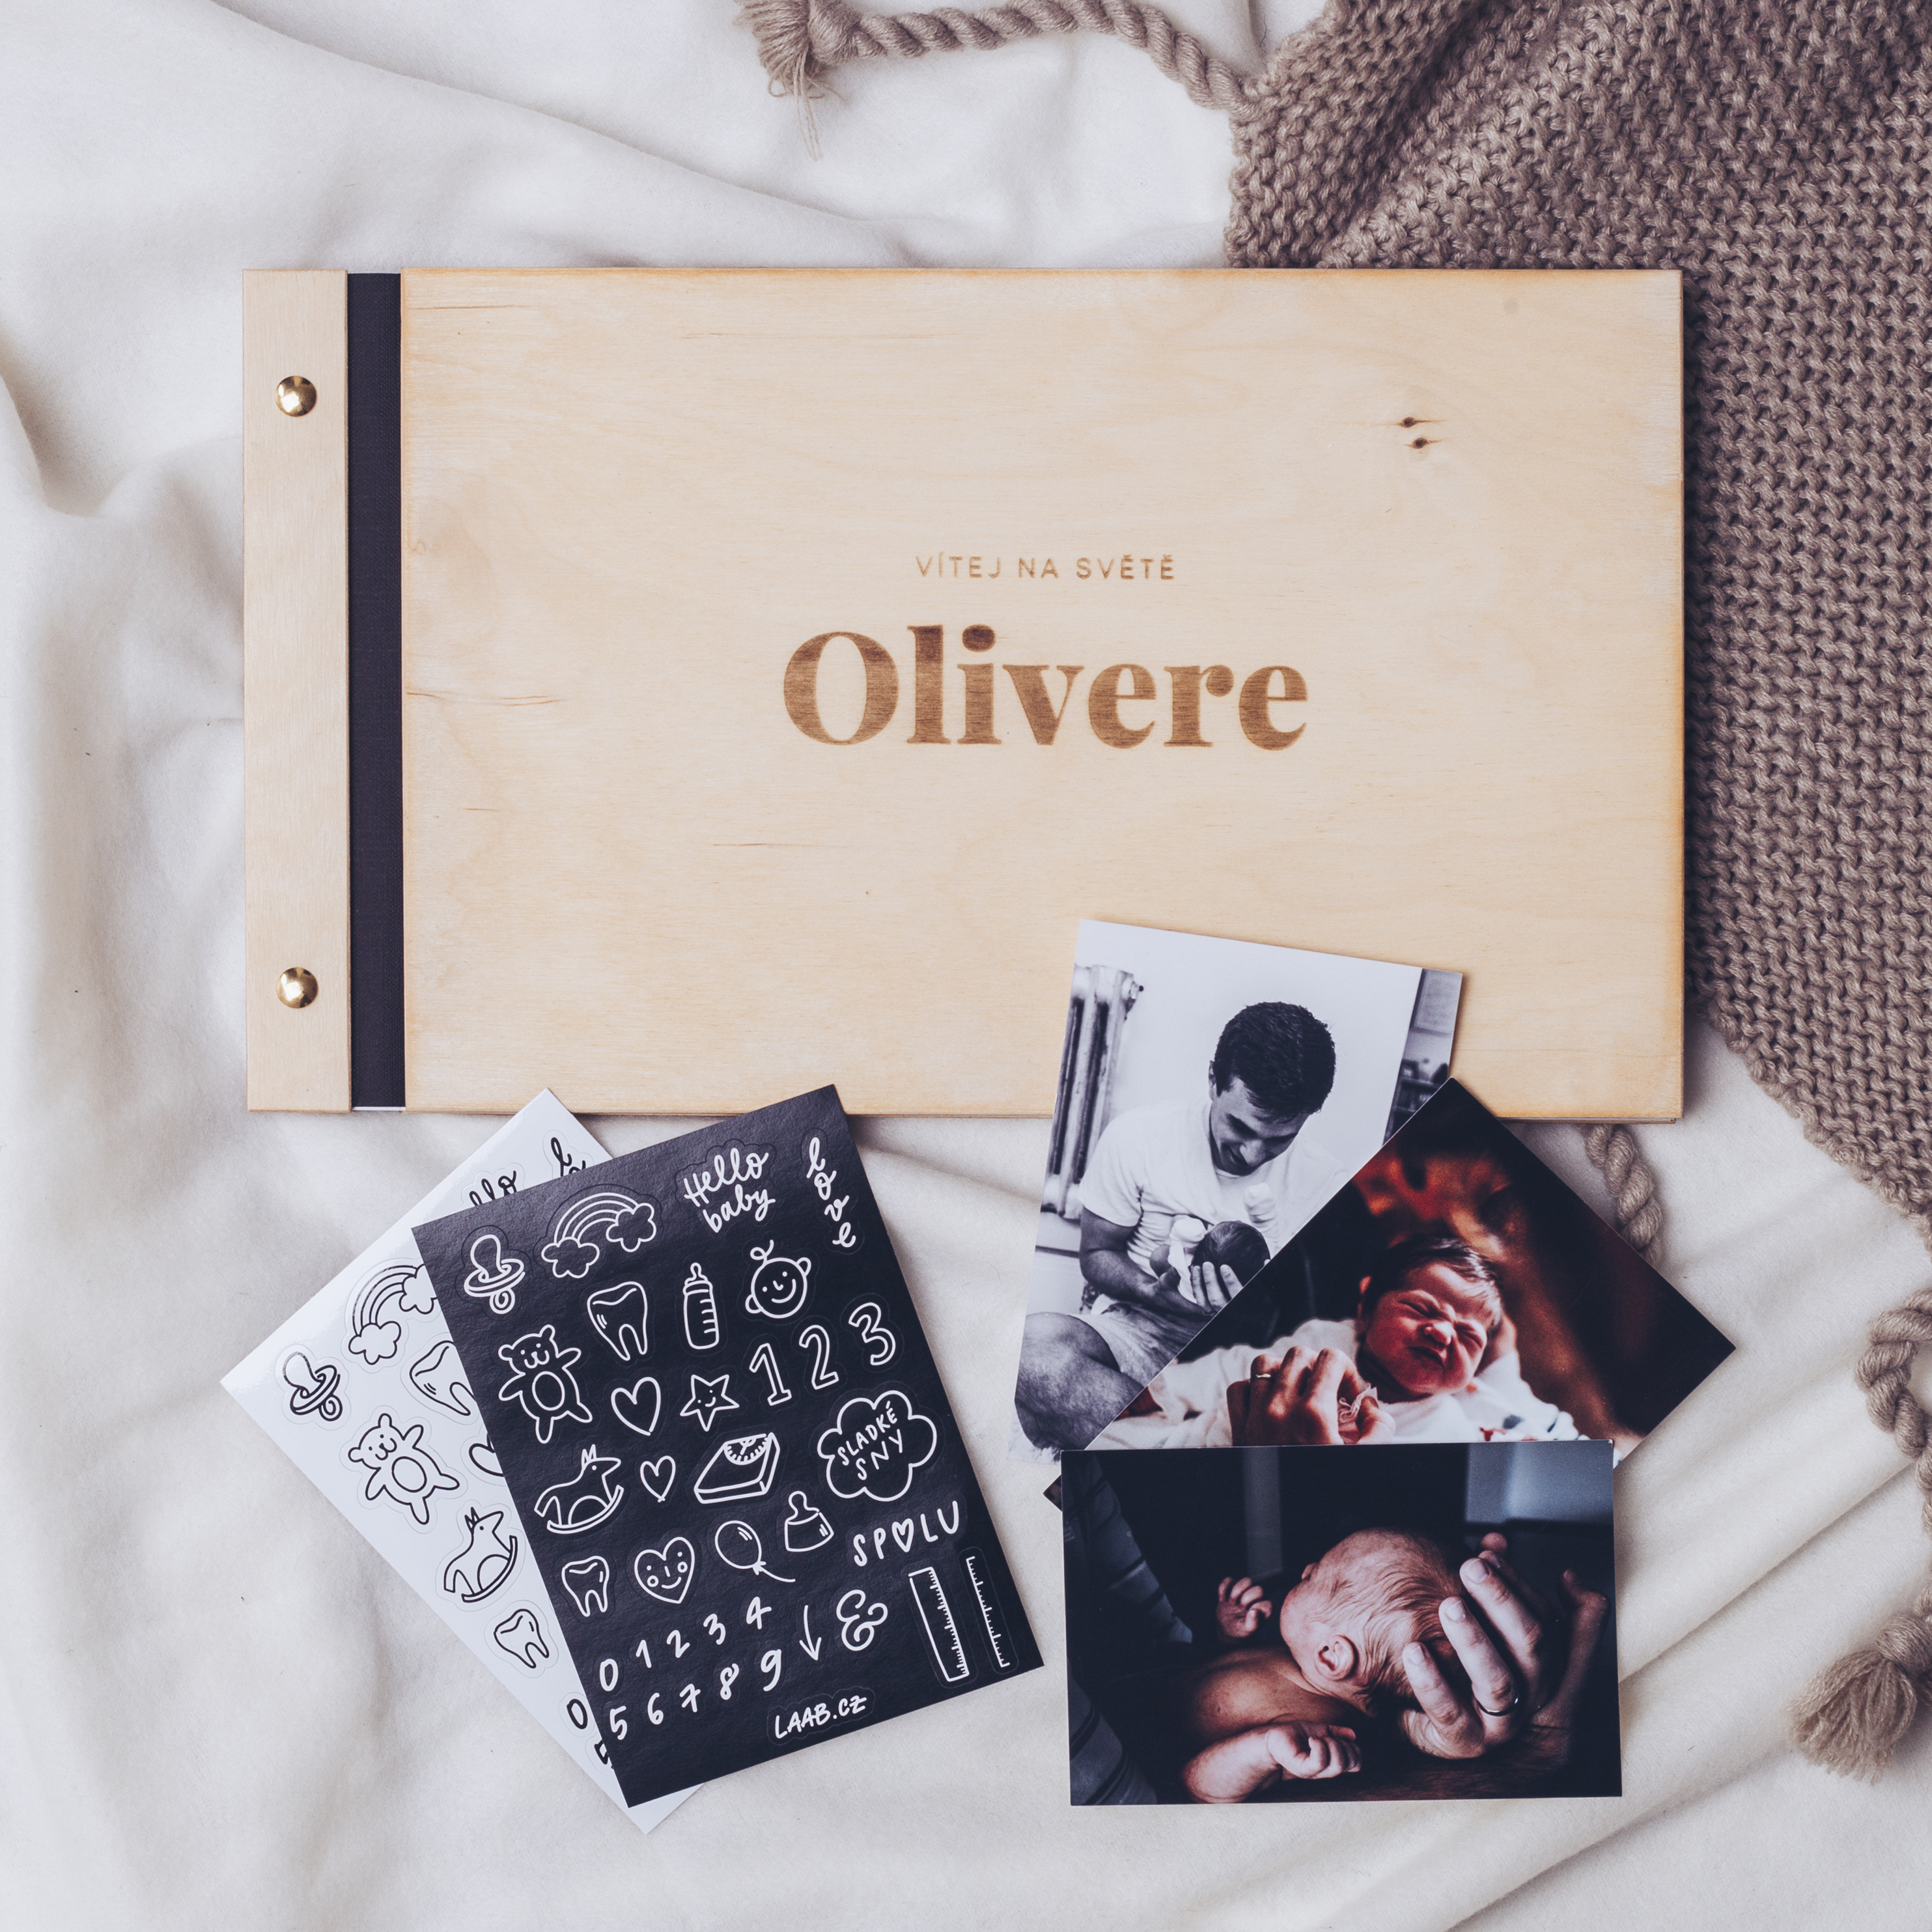 dřevěné fotoalbum Oliver: FORMÁT FOTOALBA na výšku, POČET LISTŮ 30, FORMÁT FOTOALBA na výšku, POČET LISTŮ 20 s prokladovými listy, BARVA LISTŮ černá